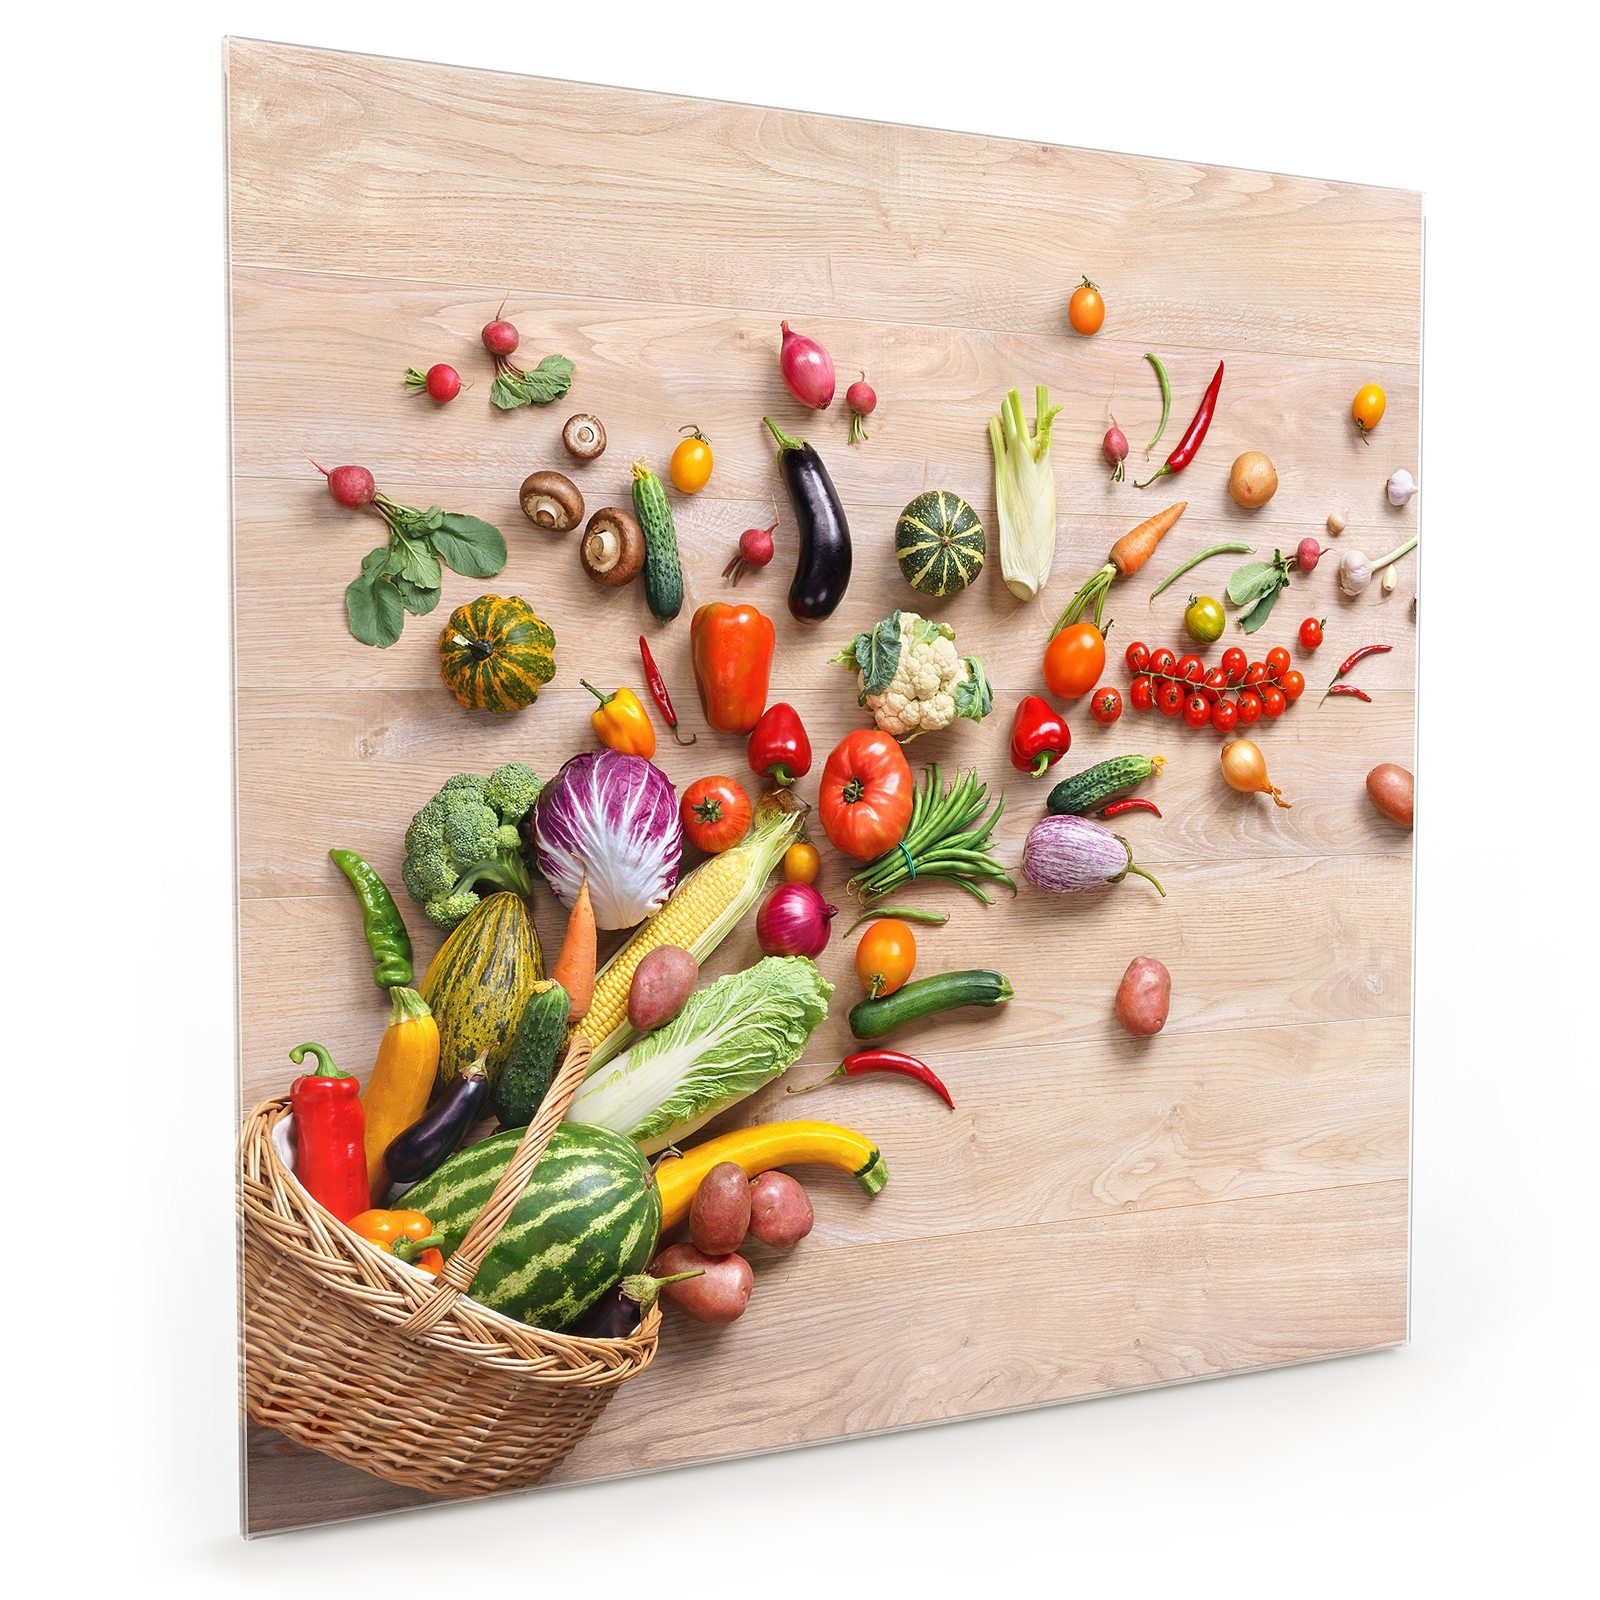 Primedeco Küchenrückwand Küchenrückwand aus mit fallend Motiv Spritzschutz Korb Gemüse Glas